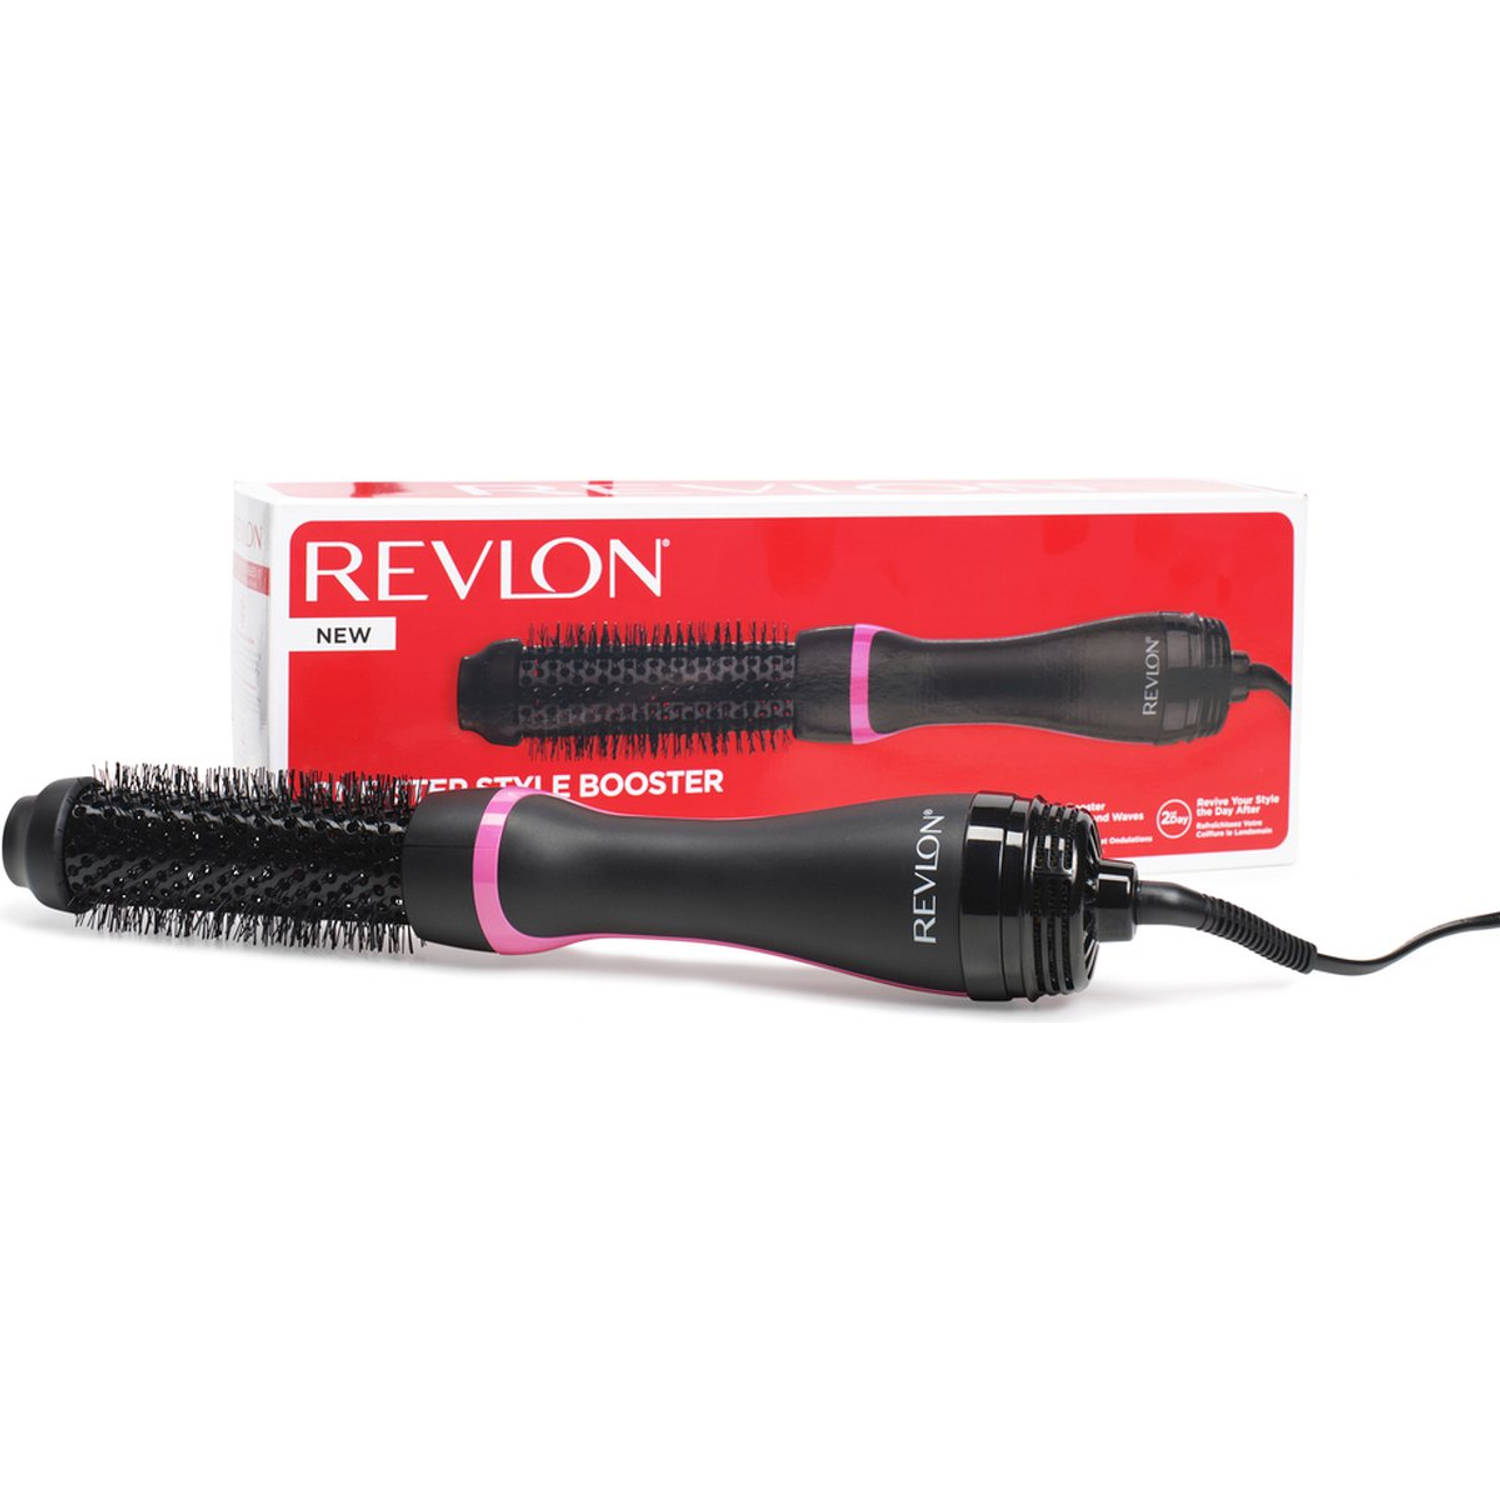 Revlon stylingborstel met warme lucht RVDR5292UKE One-Step-Style-Booster – Rundbürstenföhn und Style